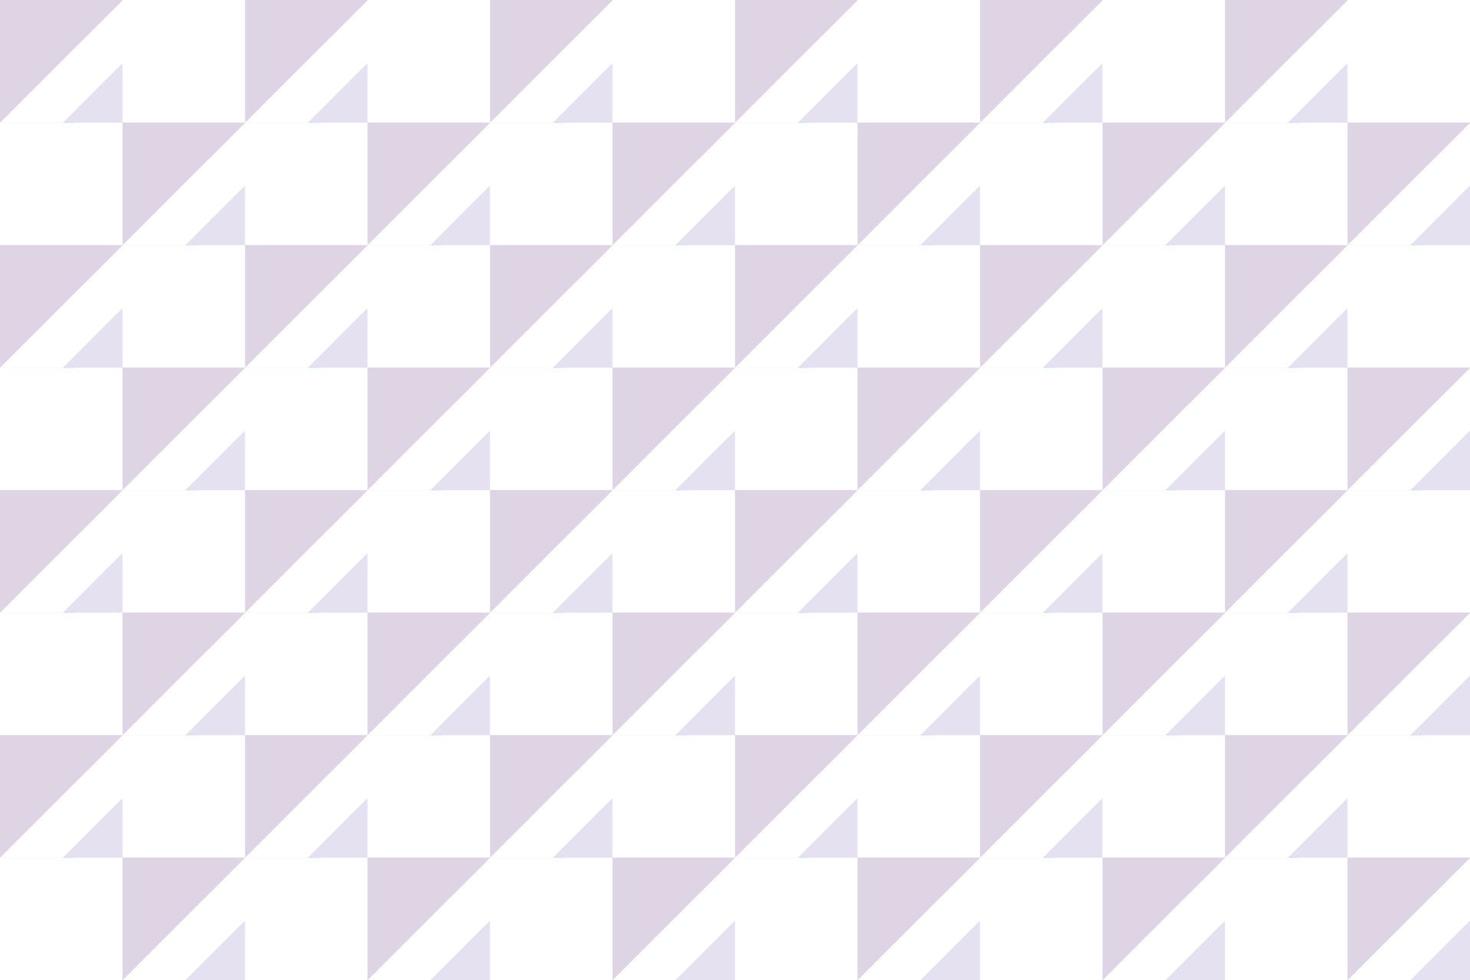 Checker Pattern Illustrations Vectors ist ein Muster aus modifizierten Streifen, die aus gekreuzten horizontalen und vertikalen Linien bestehen, die Quadrate bilden.